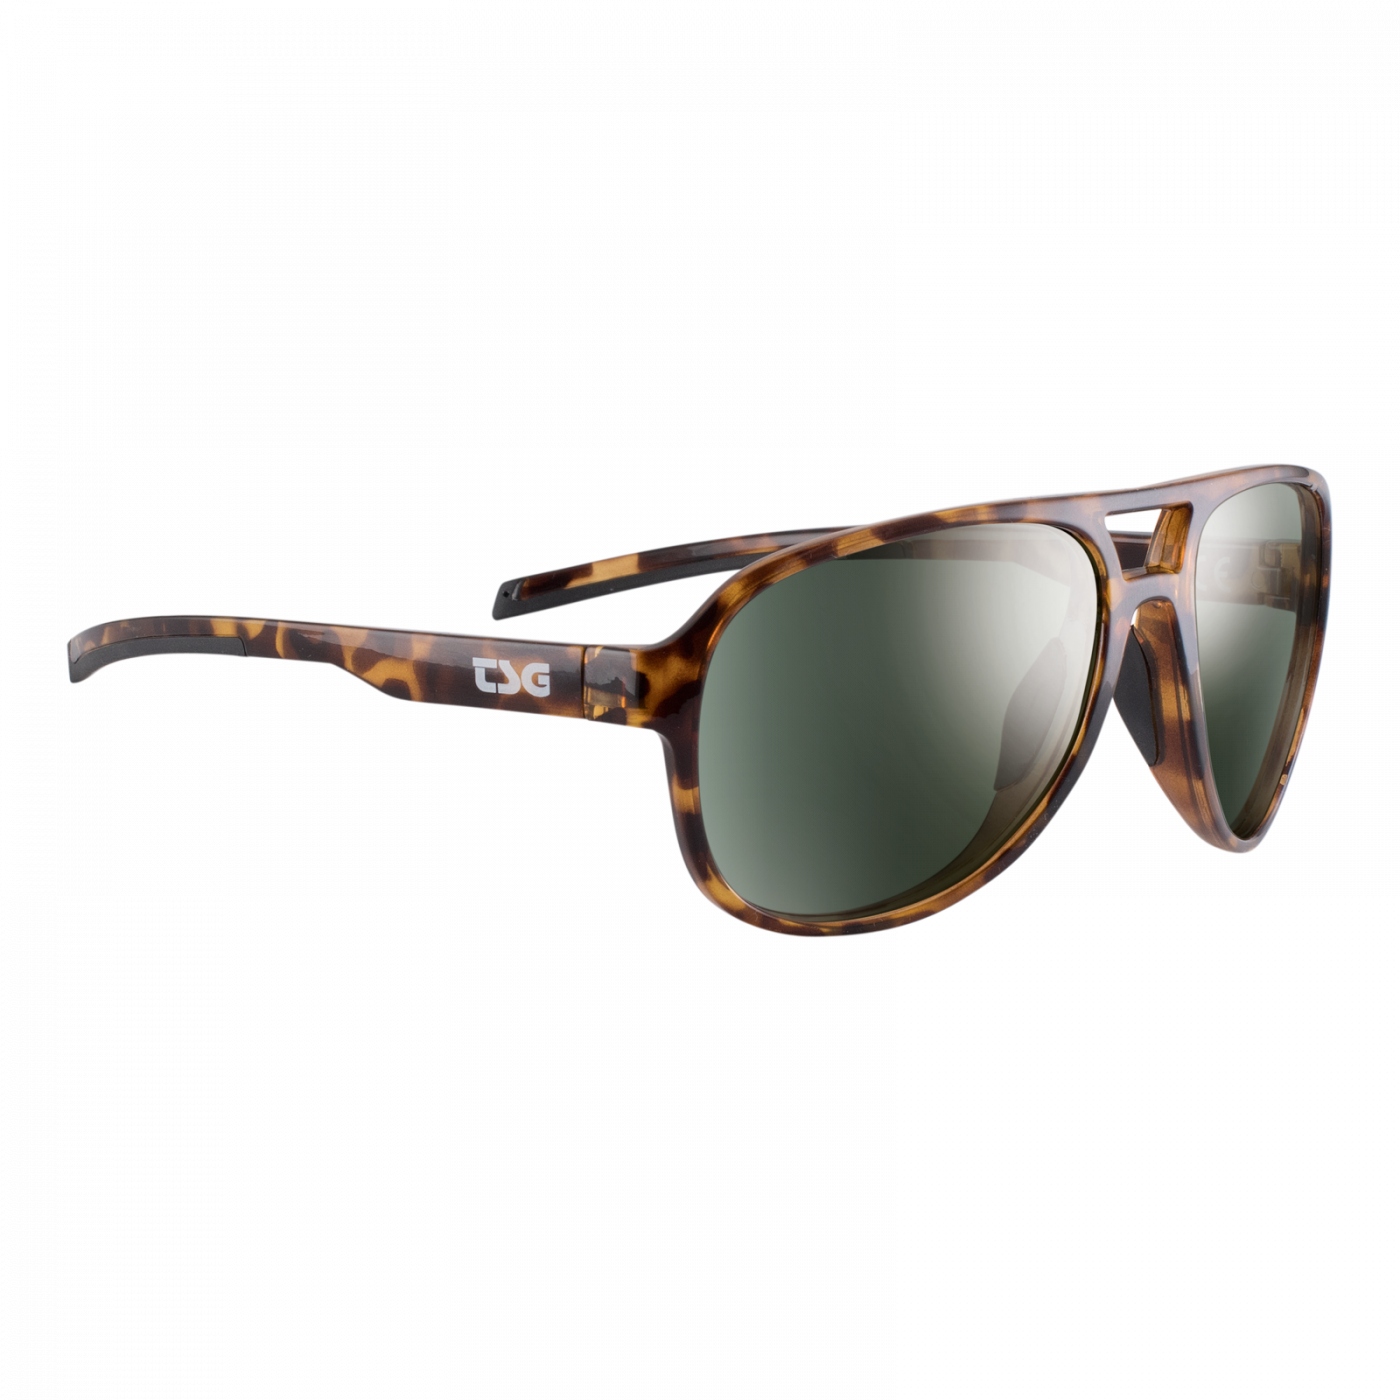 Produktbild von TSG Cruise Sonnenbrille - braun